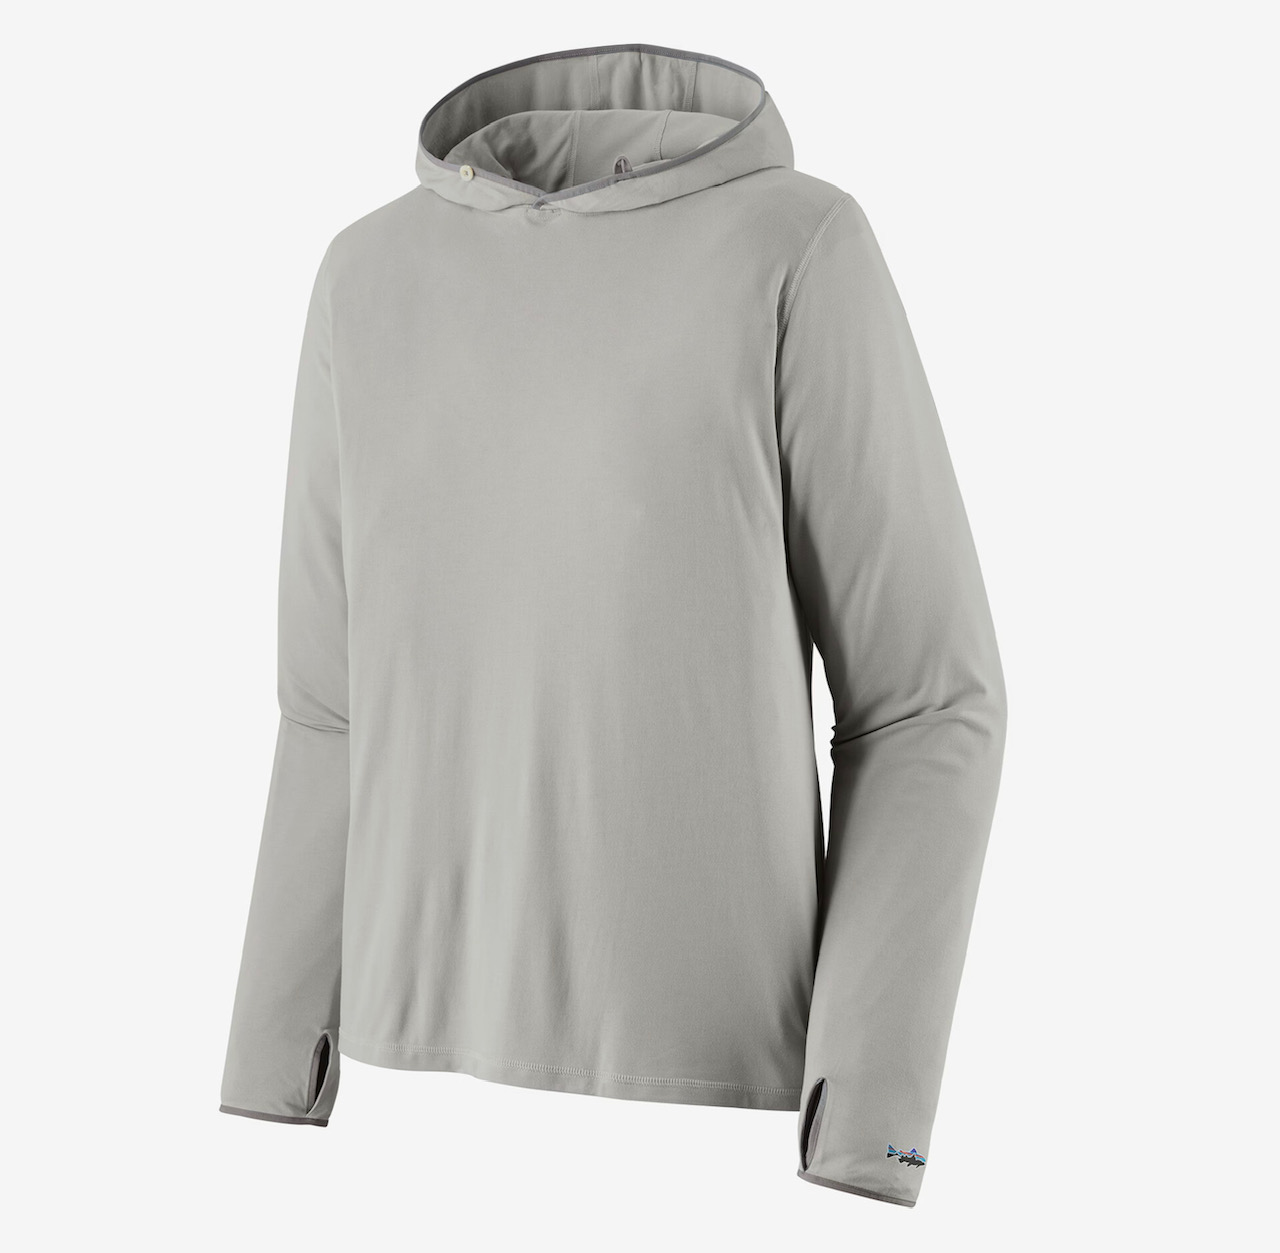 Patagonia M's Tropic Comfort Natural UPF Hoody - Tailored Grey - Medium